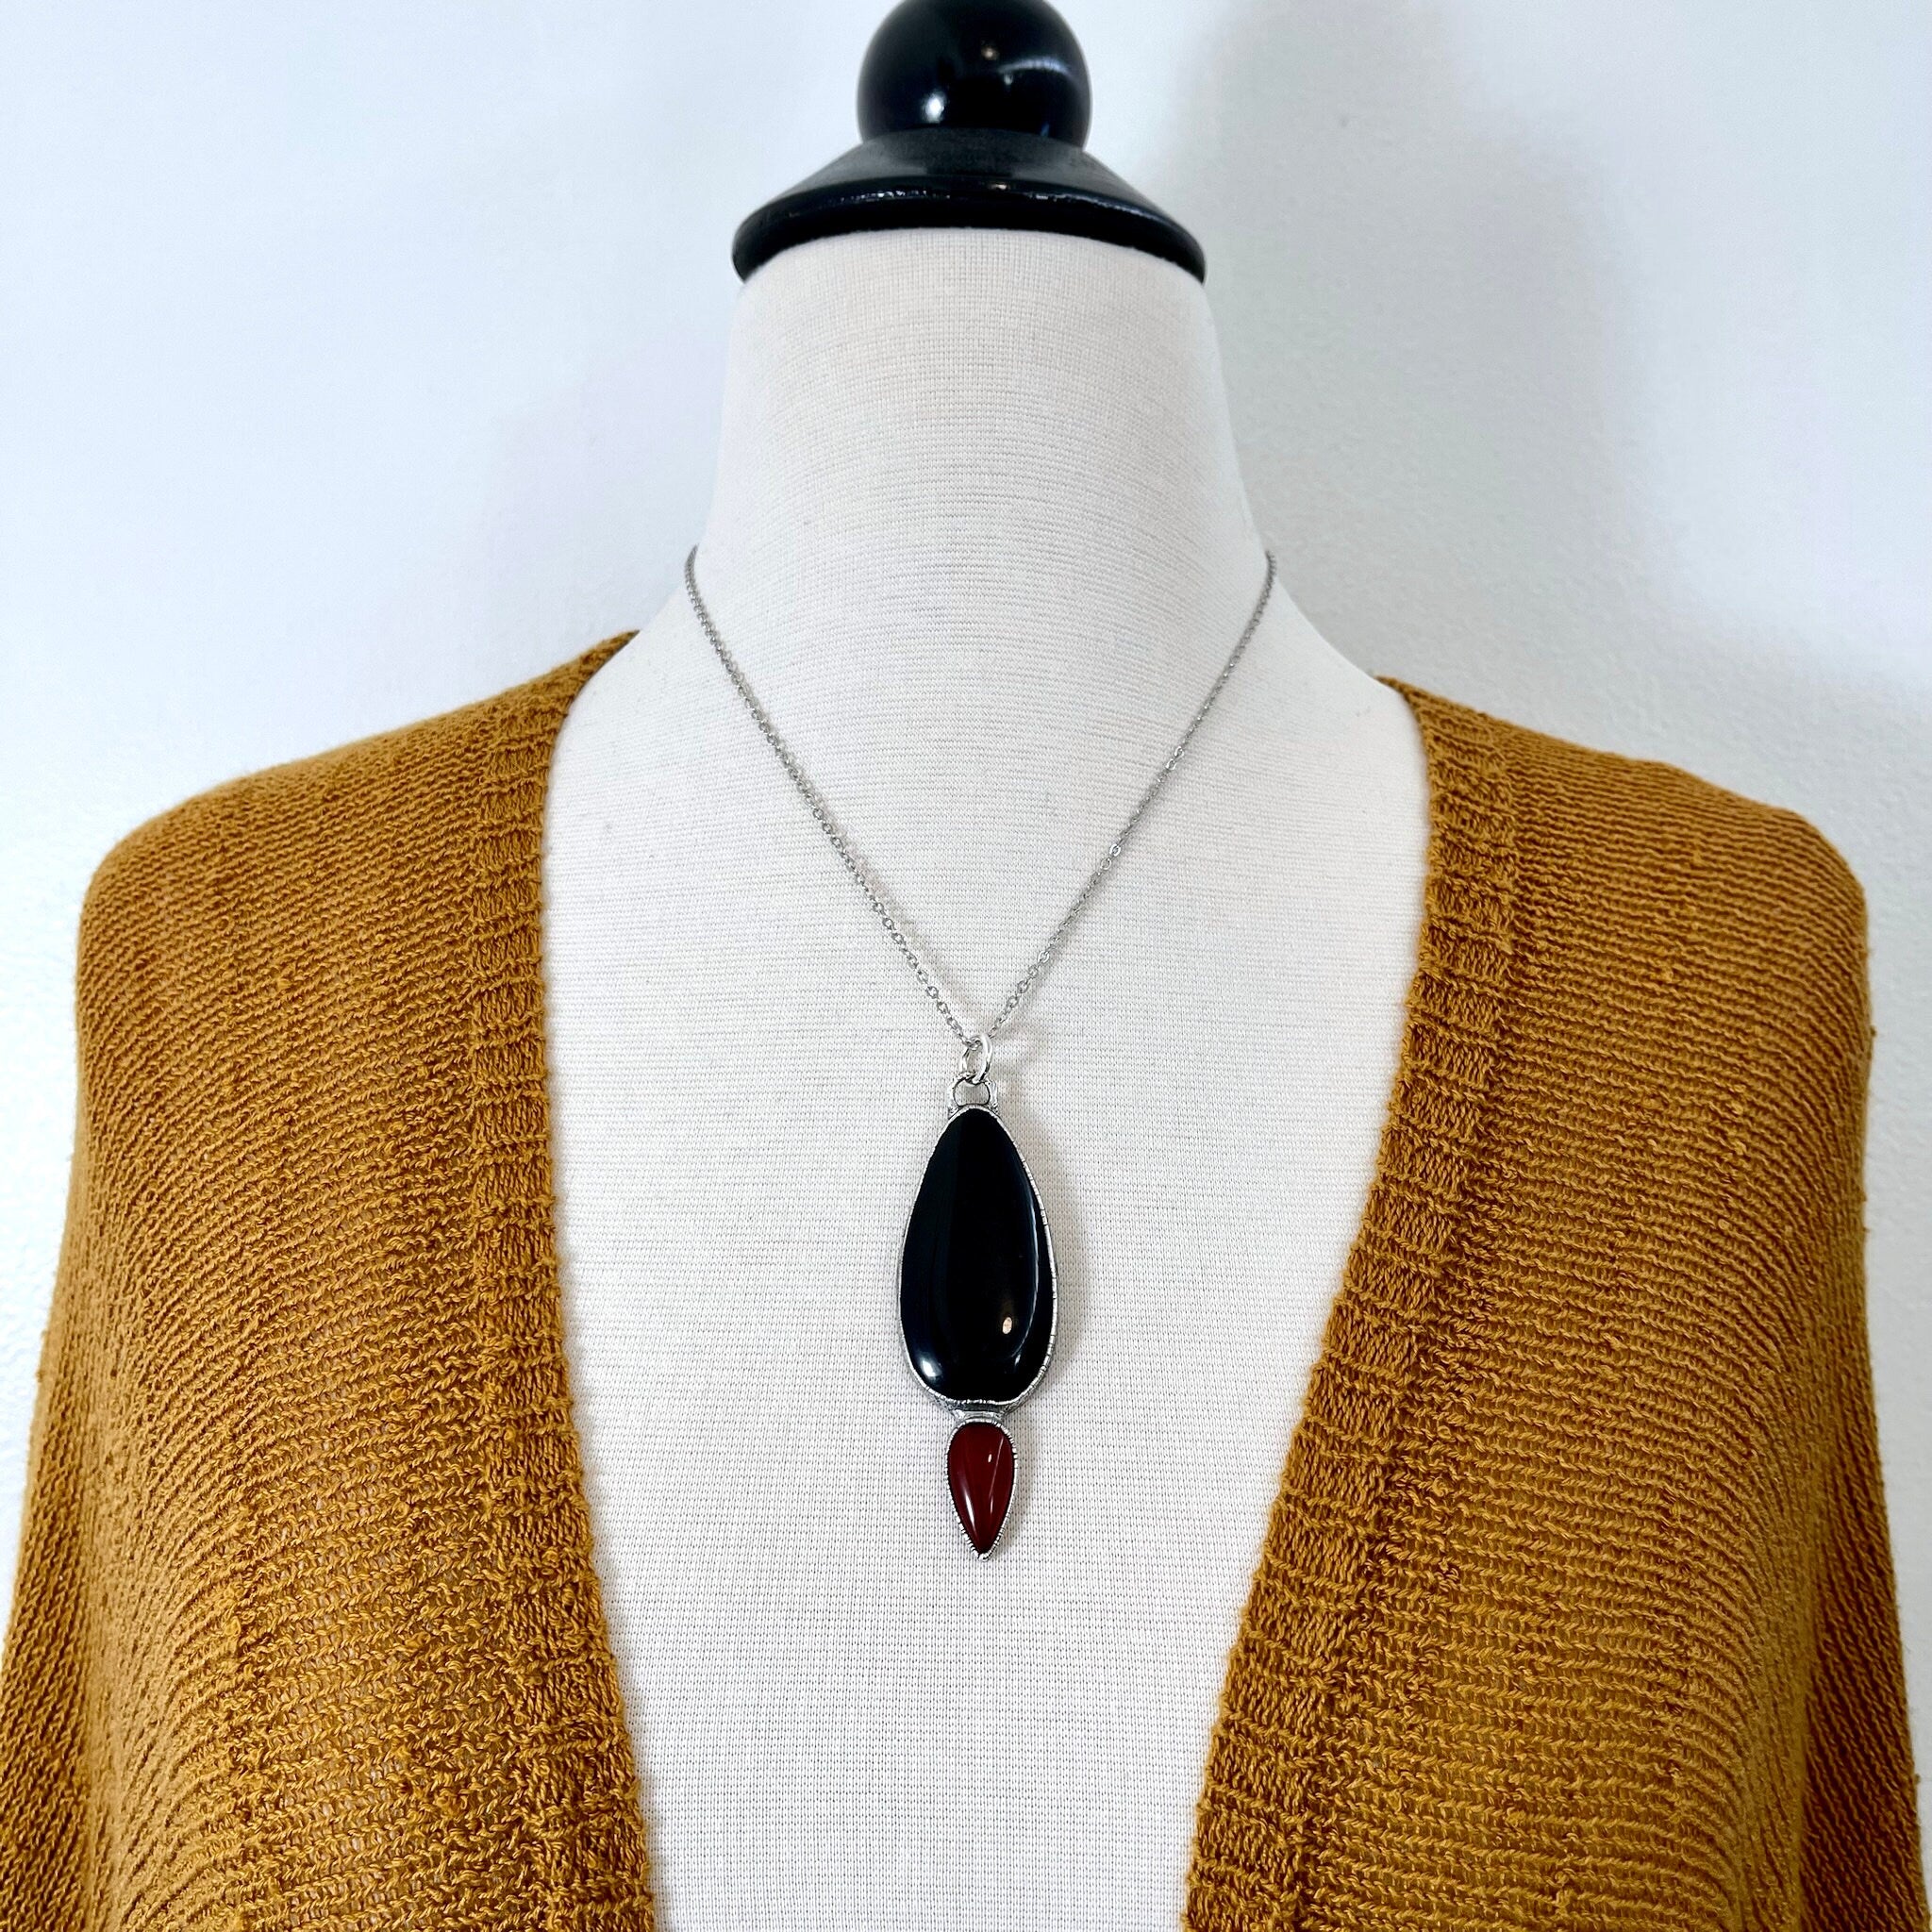 Buy Black Stone Triangular Motif Studded Necklace by Zeeya Luxury Jewellery  Online at Aza Fashions.